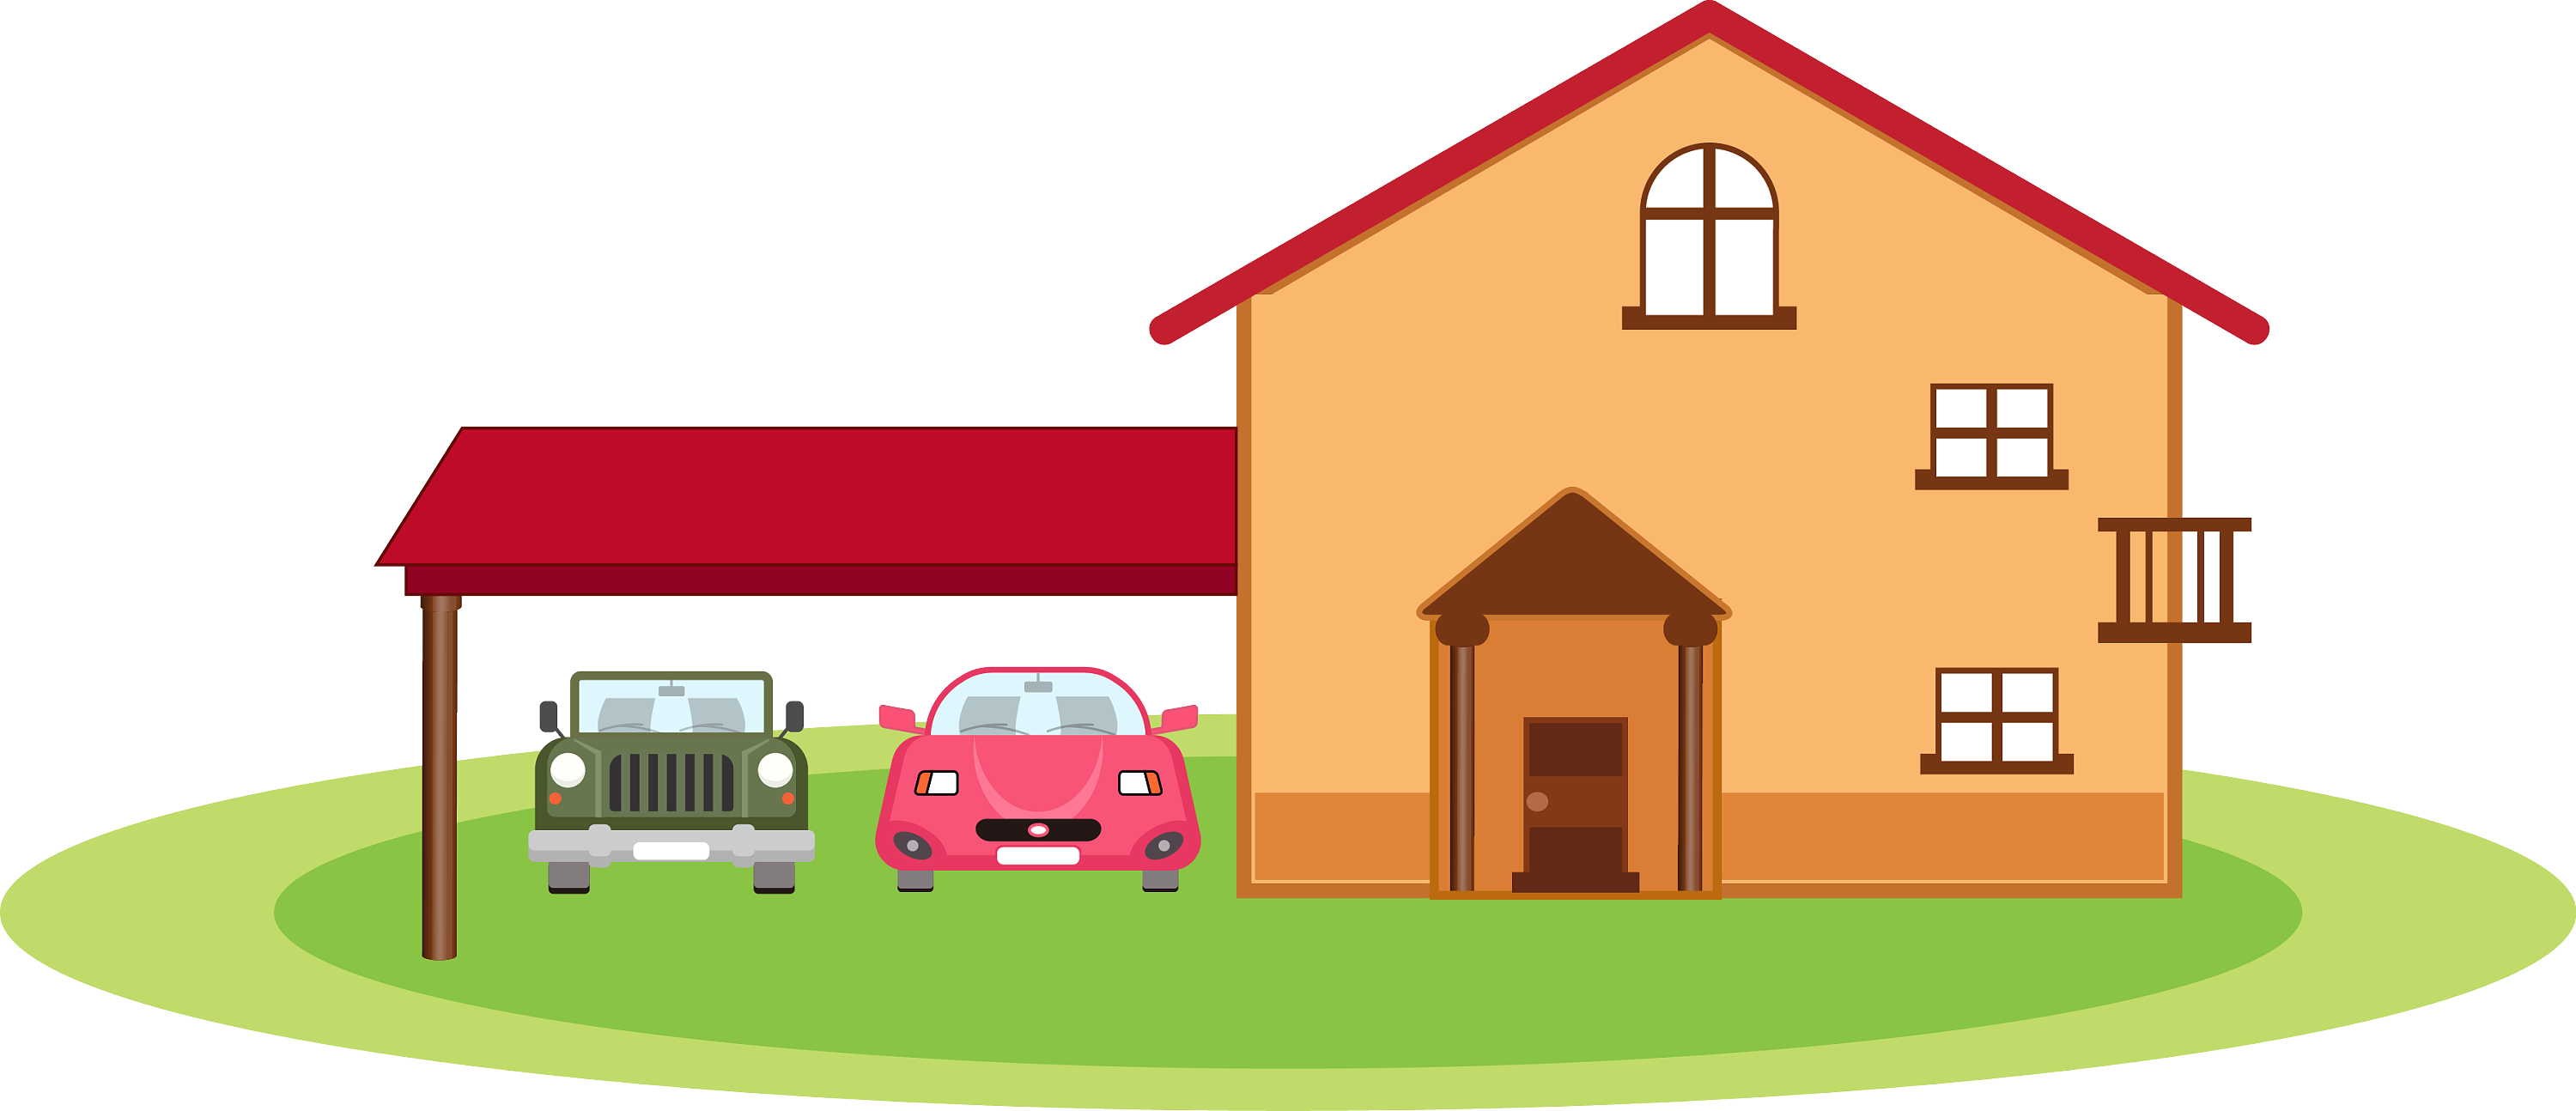 房子的图片卡通 – 免費圖庫pixabay – Mrmurp